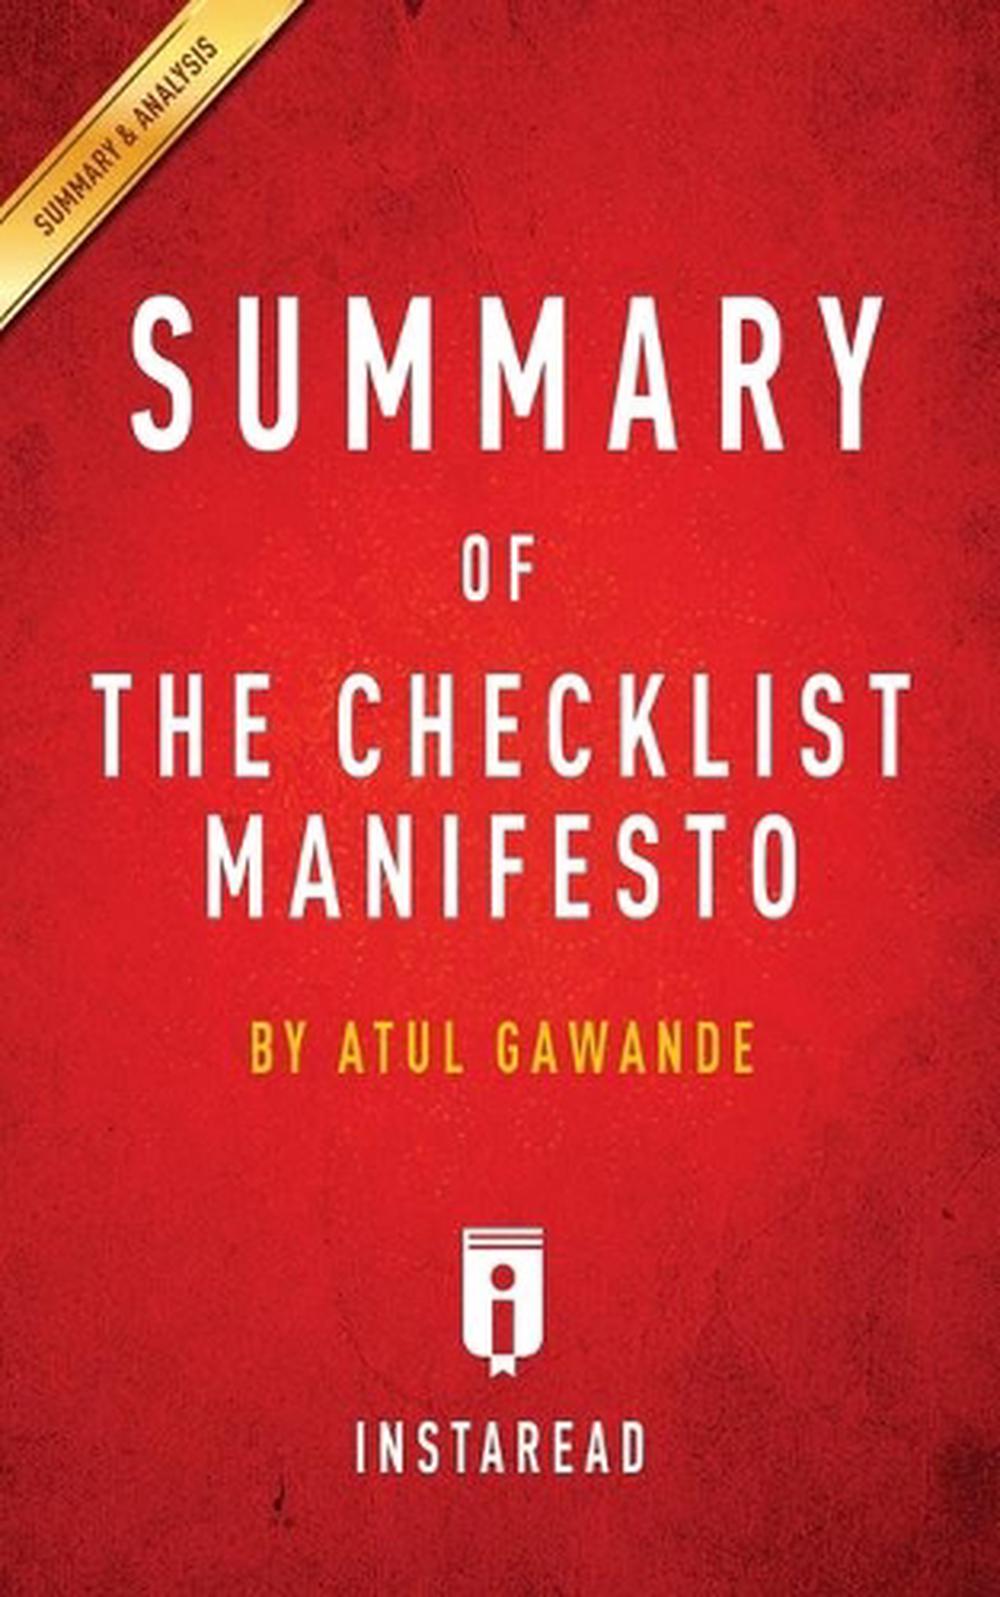 checklist manifesto audiobook download